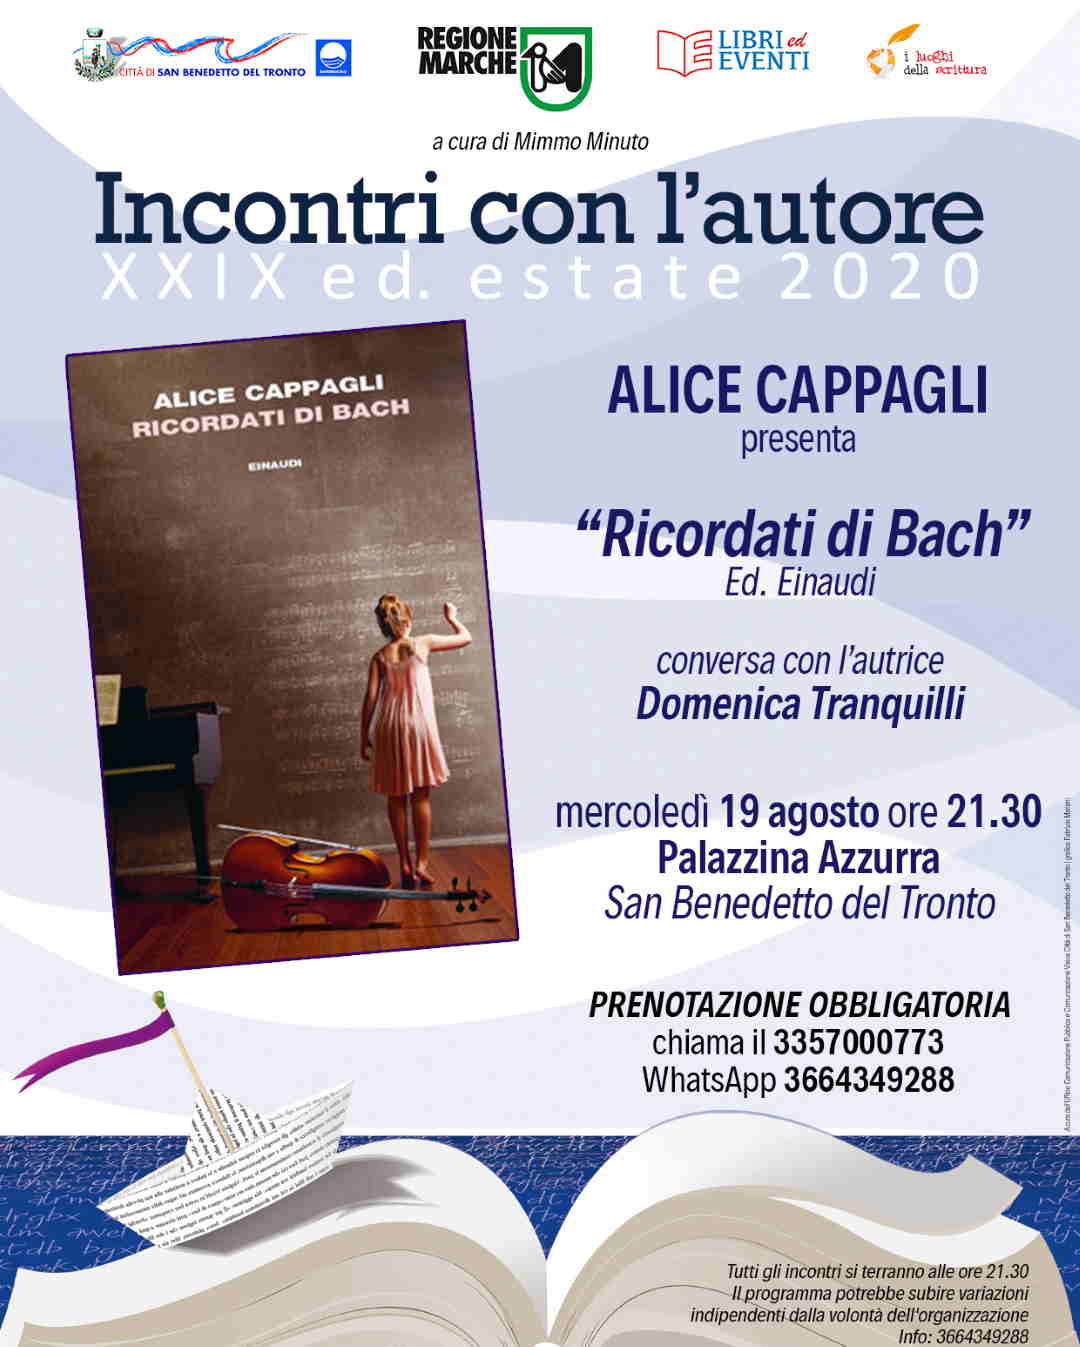 Incontri con l’Autore: Alice Cappagli, “Ricordati di Bach” @ Palazzina Azzurra